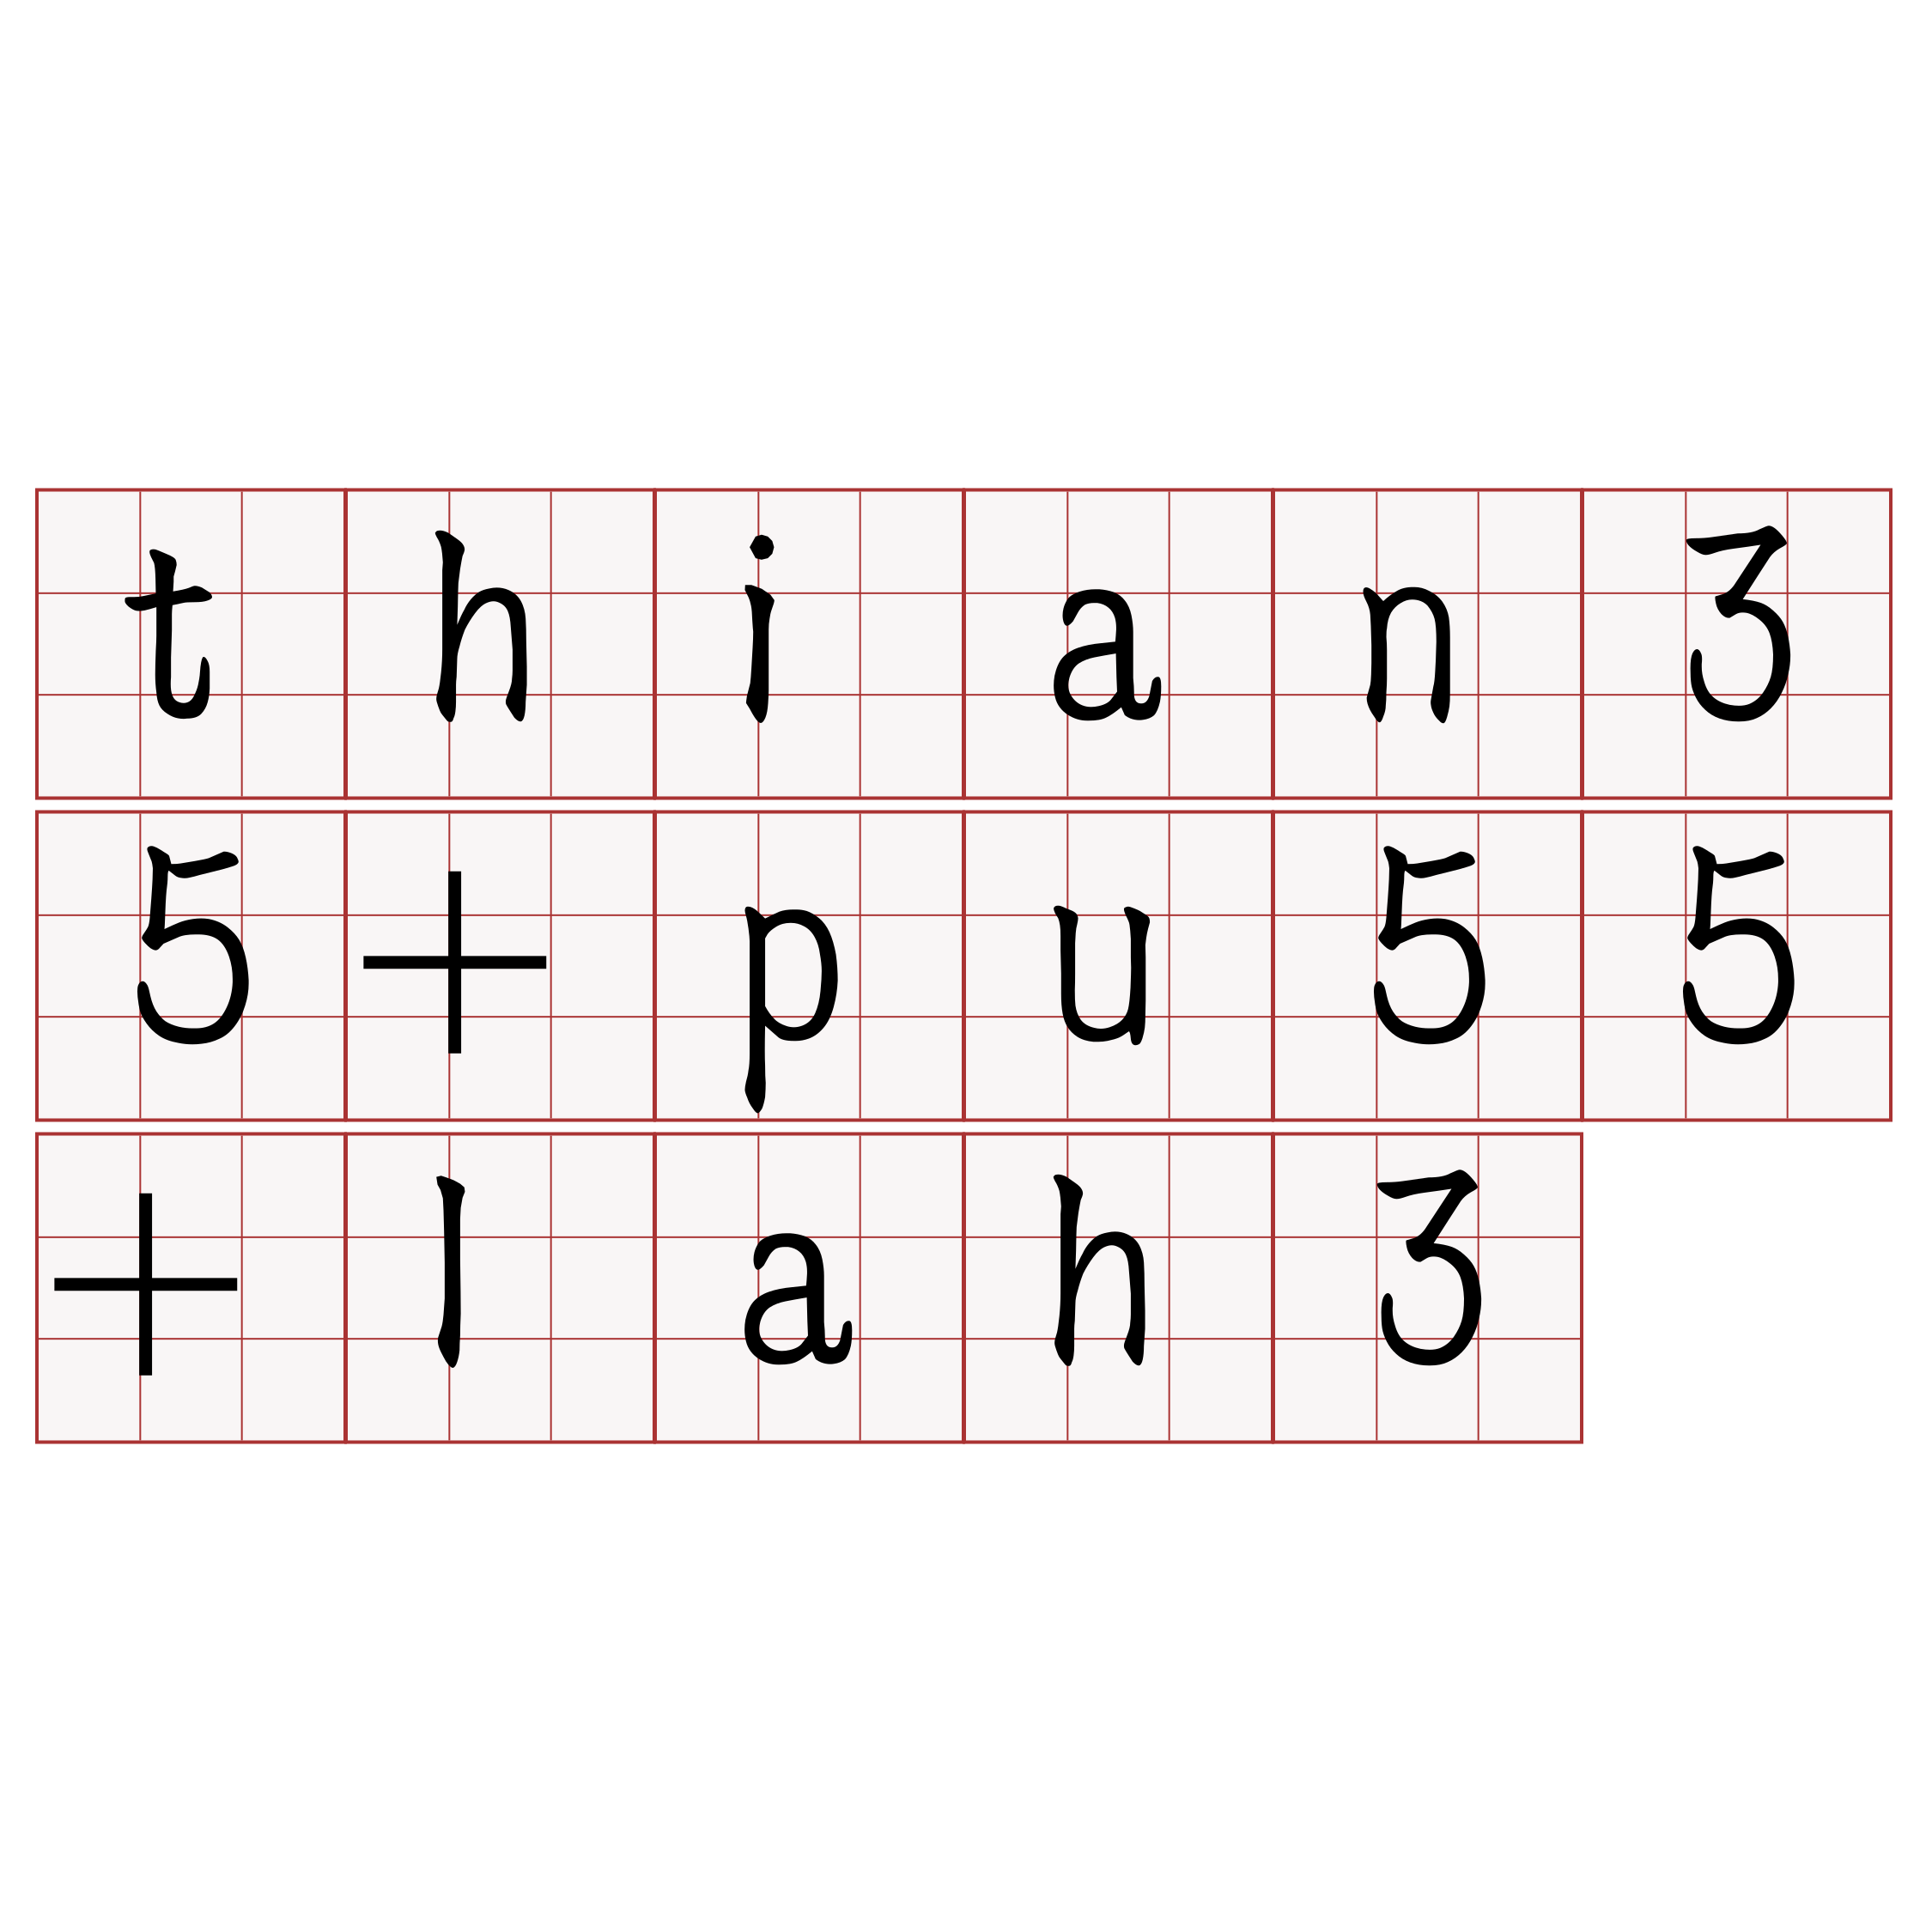 thian35+pu55+lah3